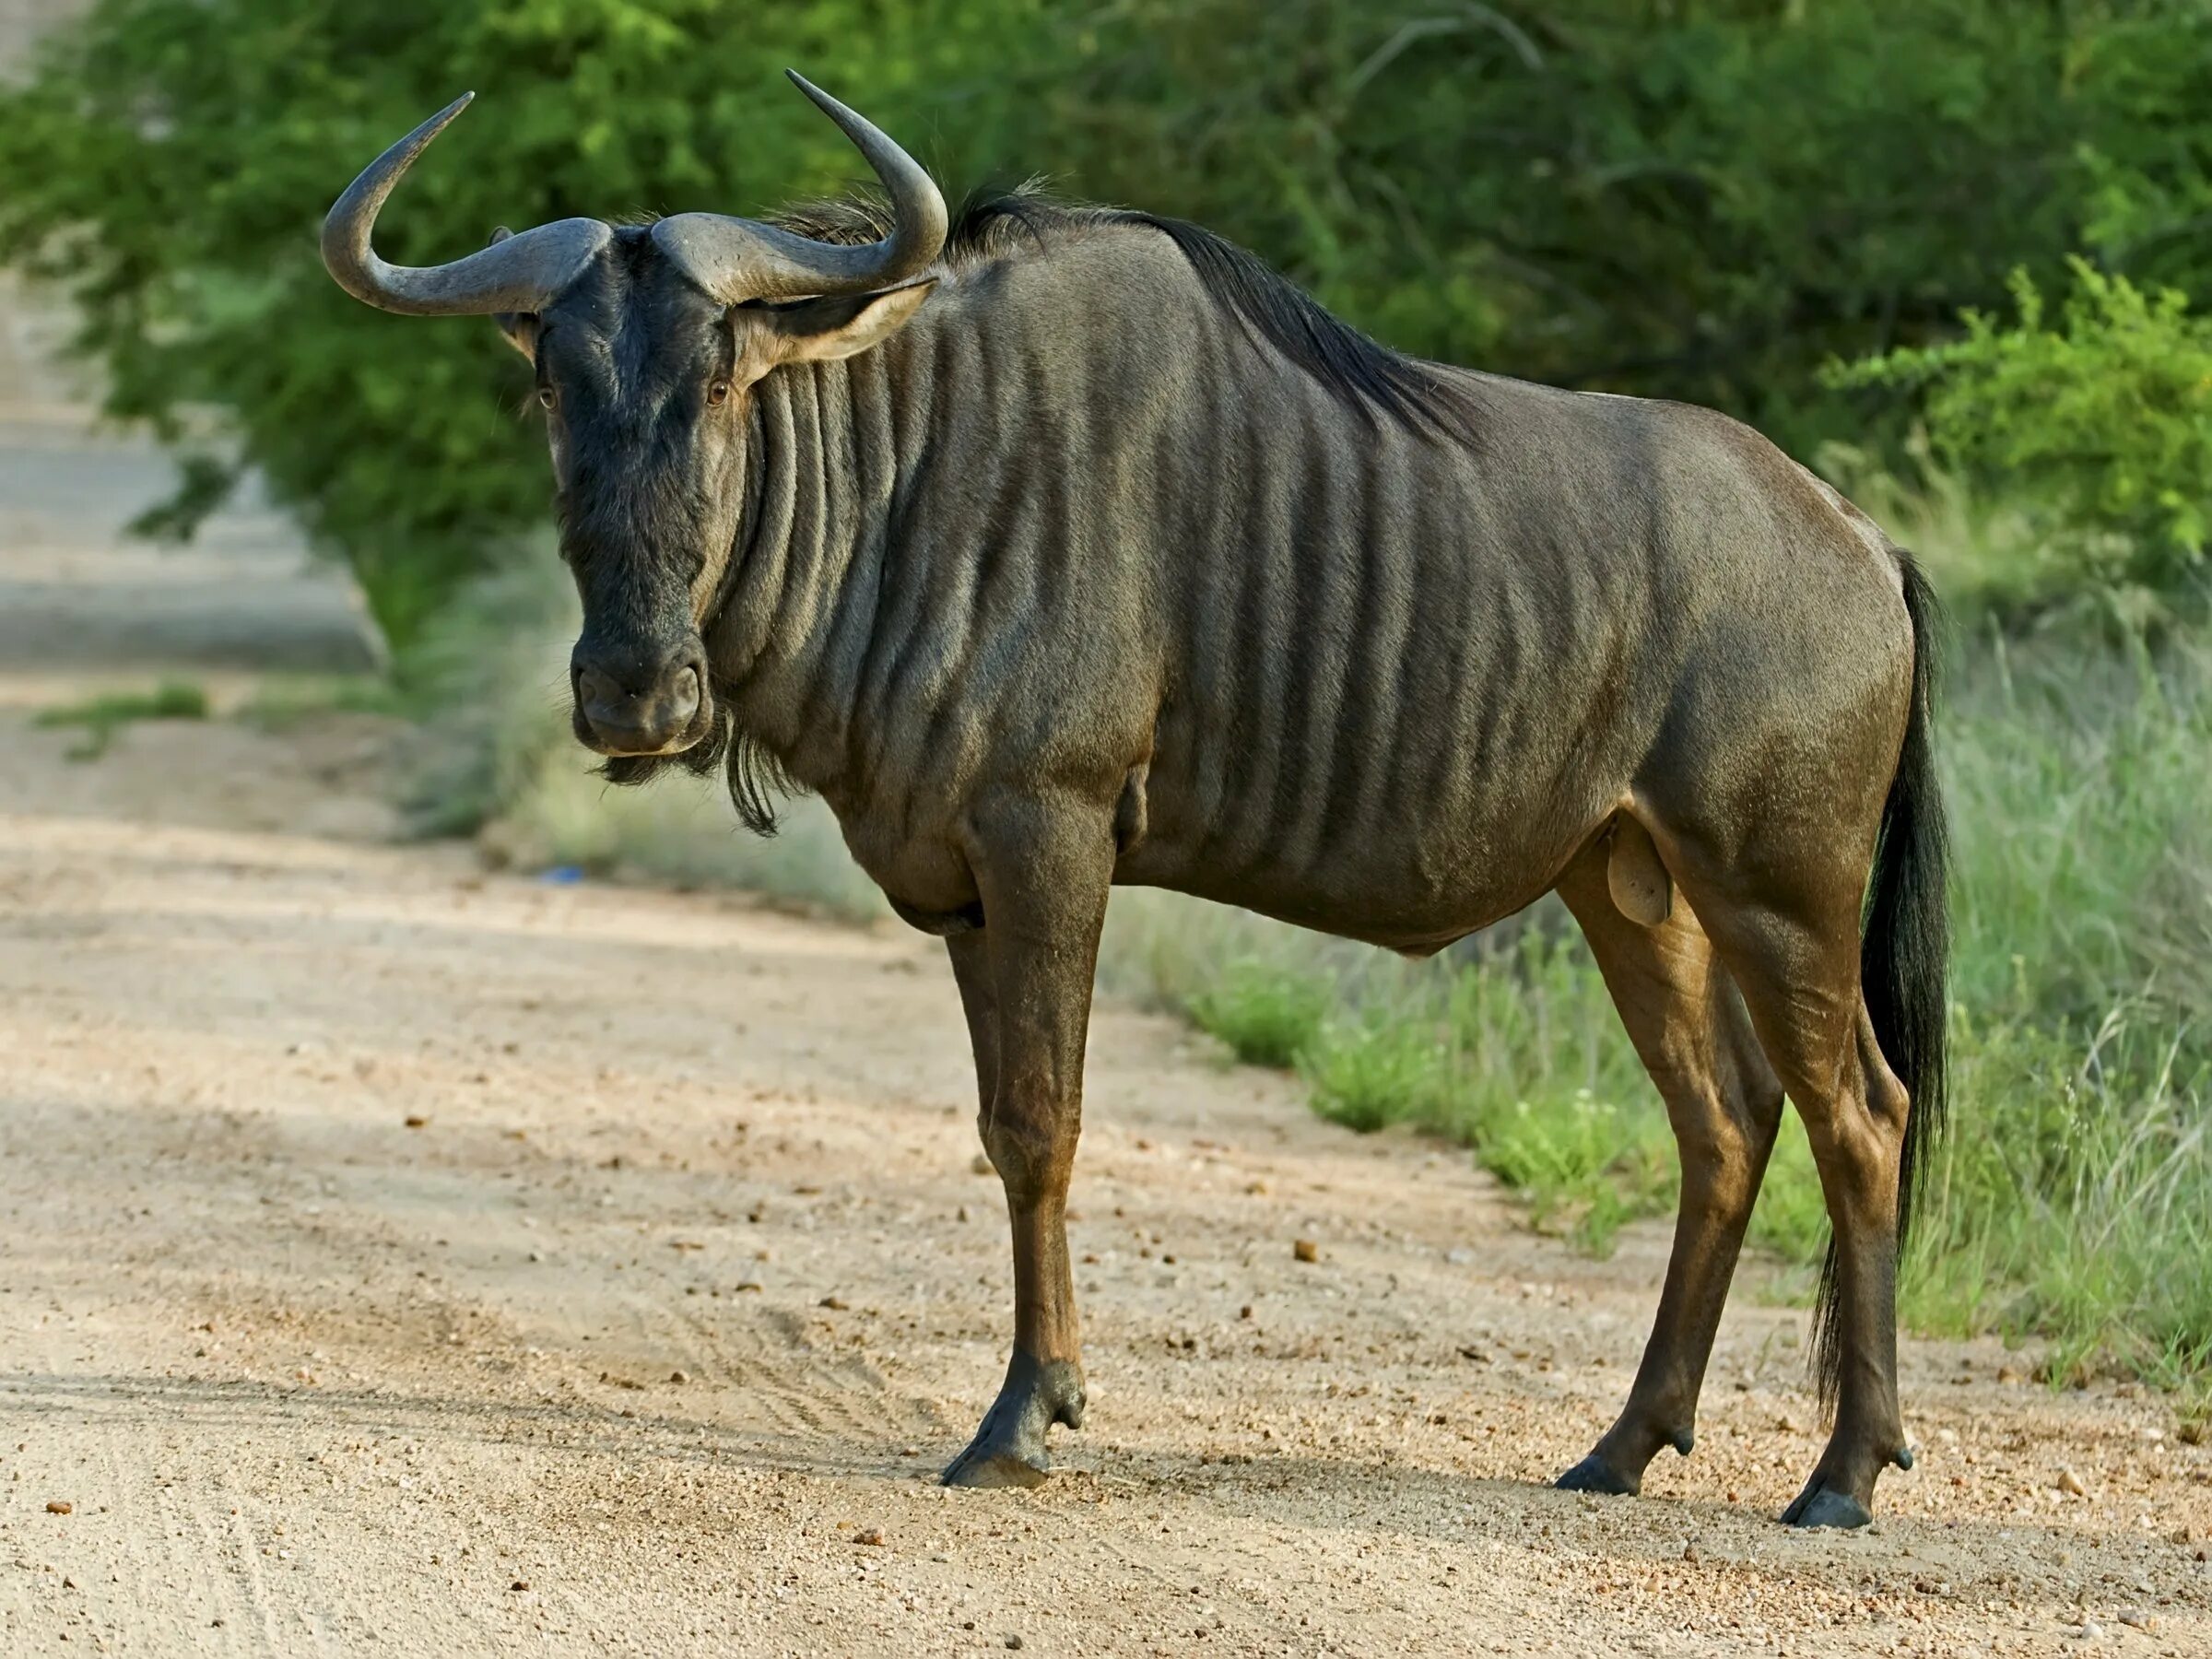 Крупный рогатый зверь массивного телосложения. Антилопа гну. Африканская антилопа гну. Голубая антилопа гну. Wildebeest антилопа гну.